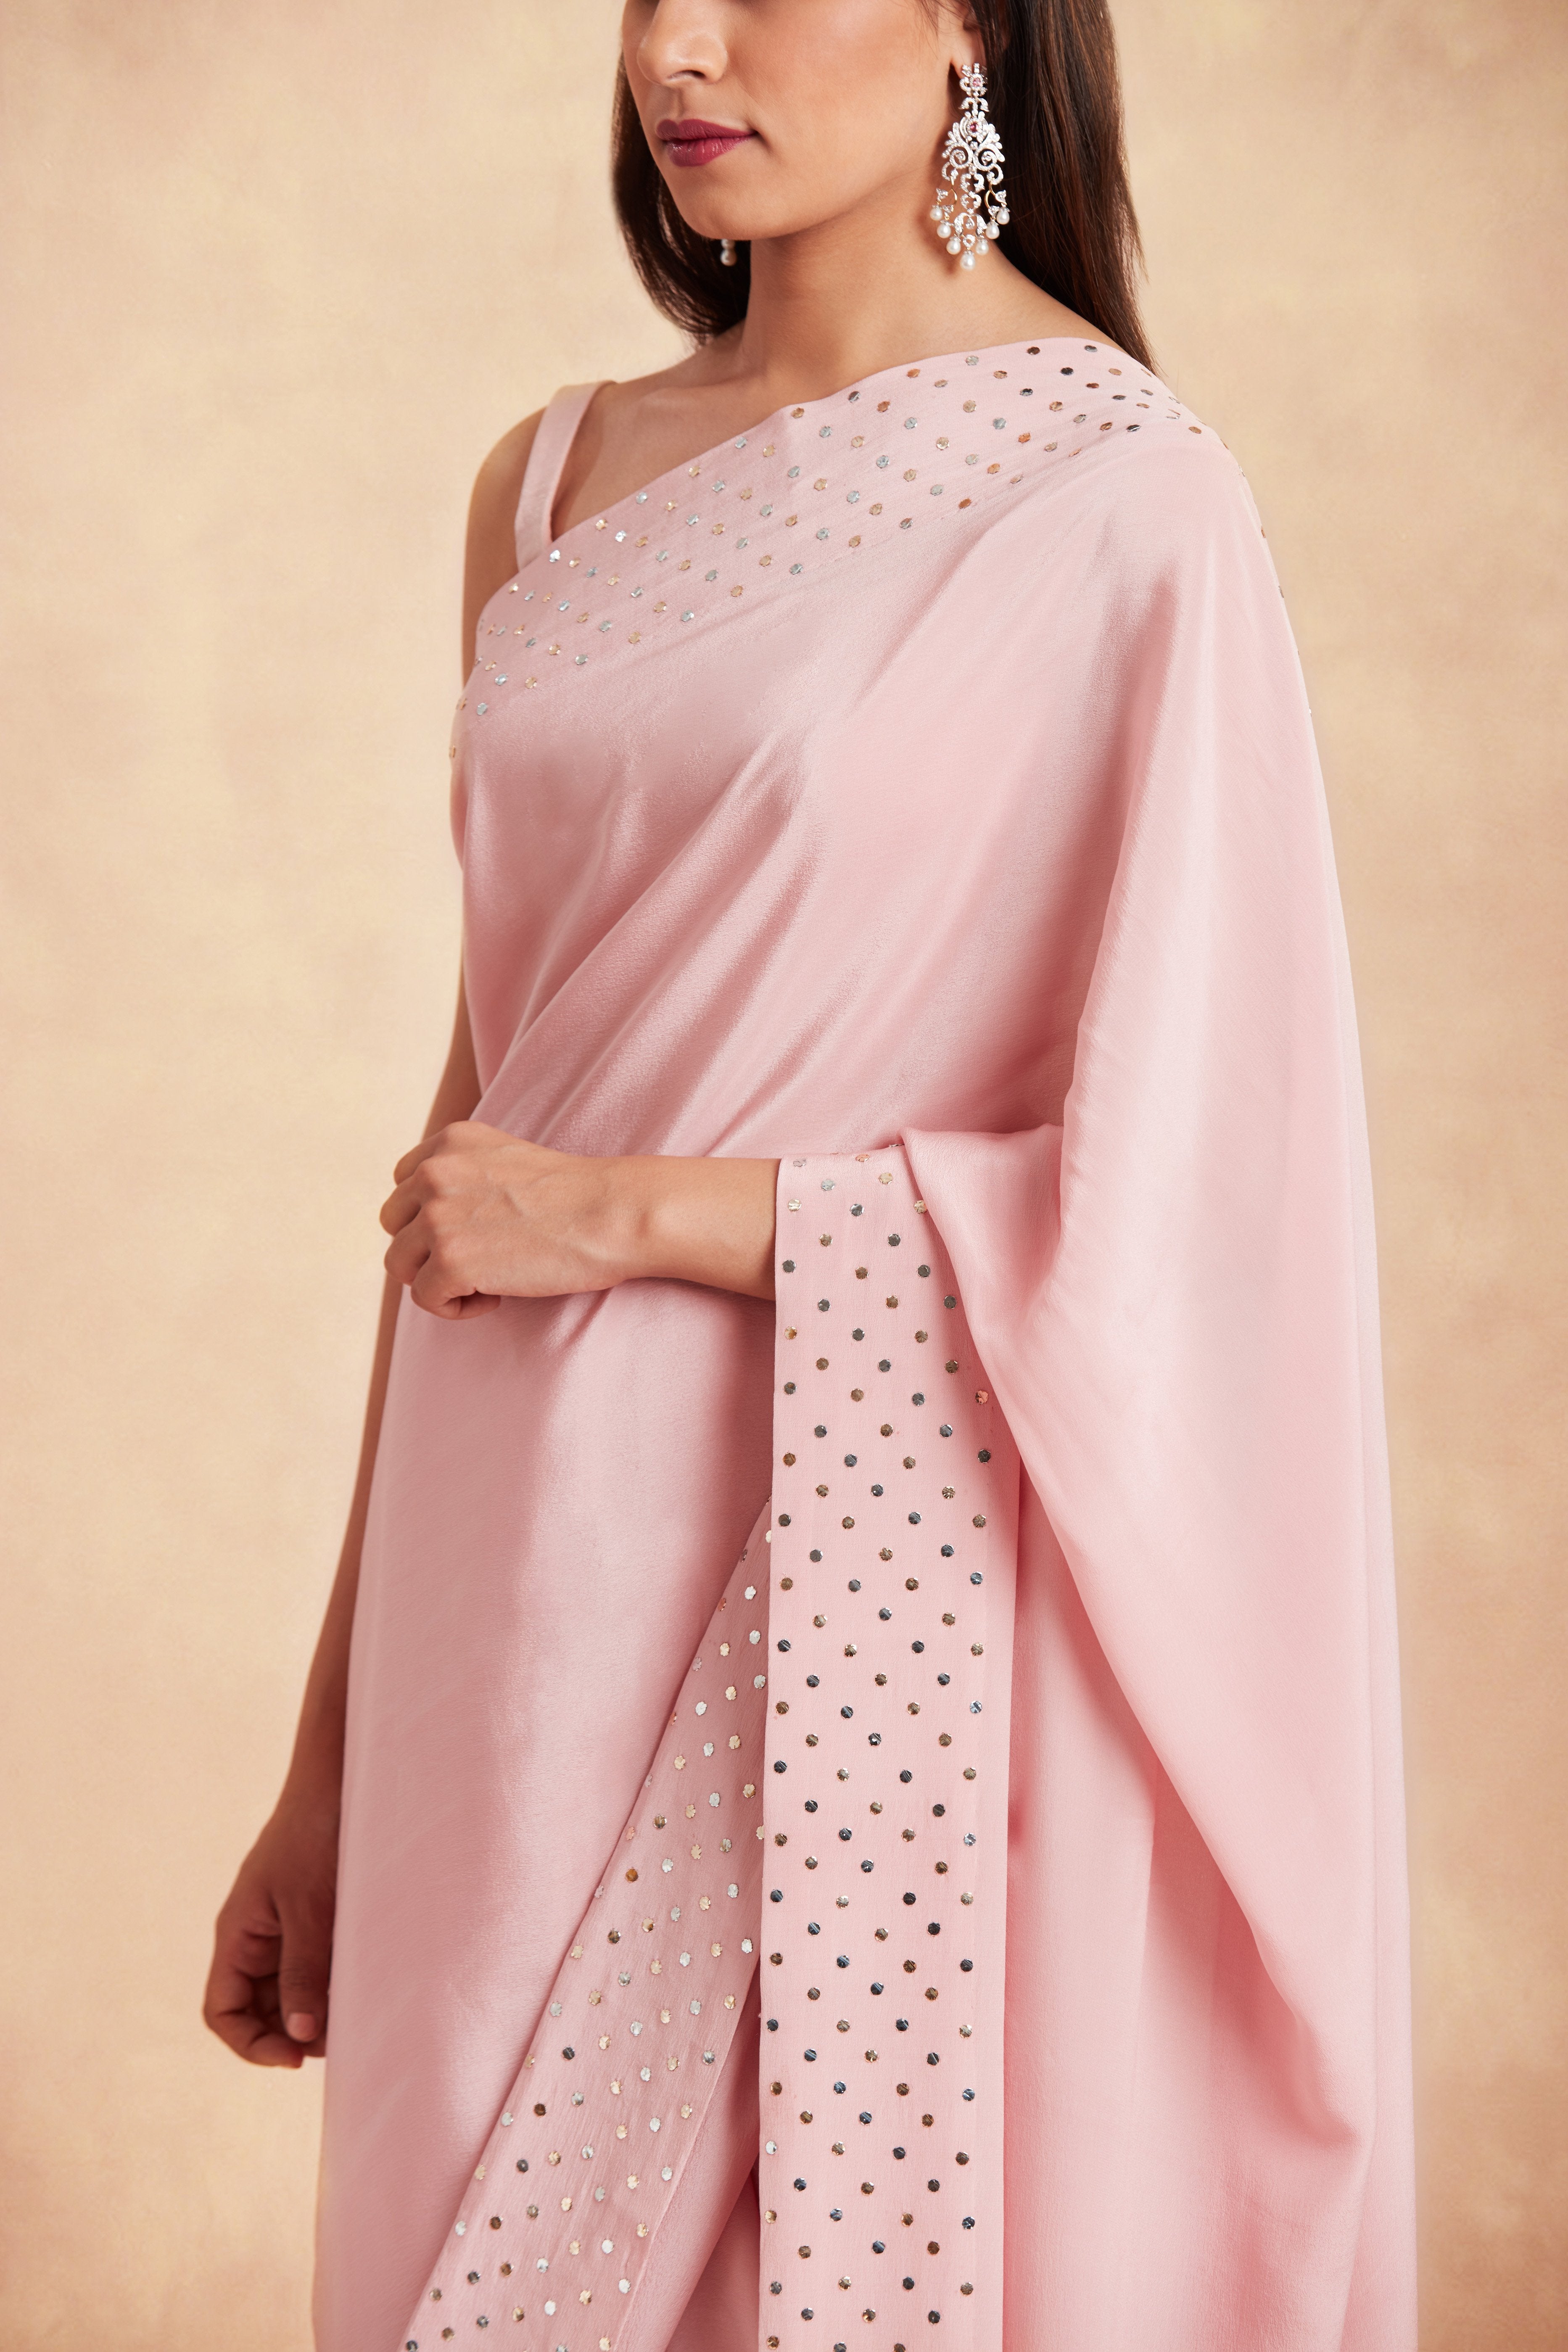 Sanjhana Reddy - Pink badla silk saree